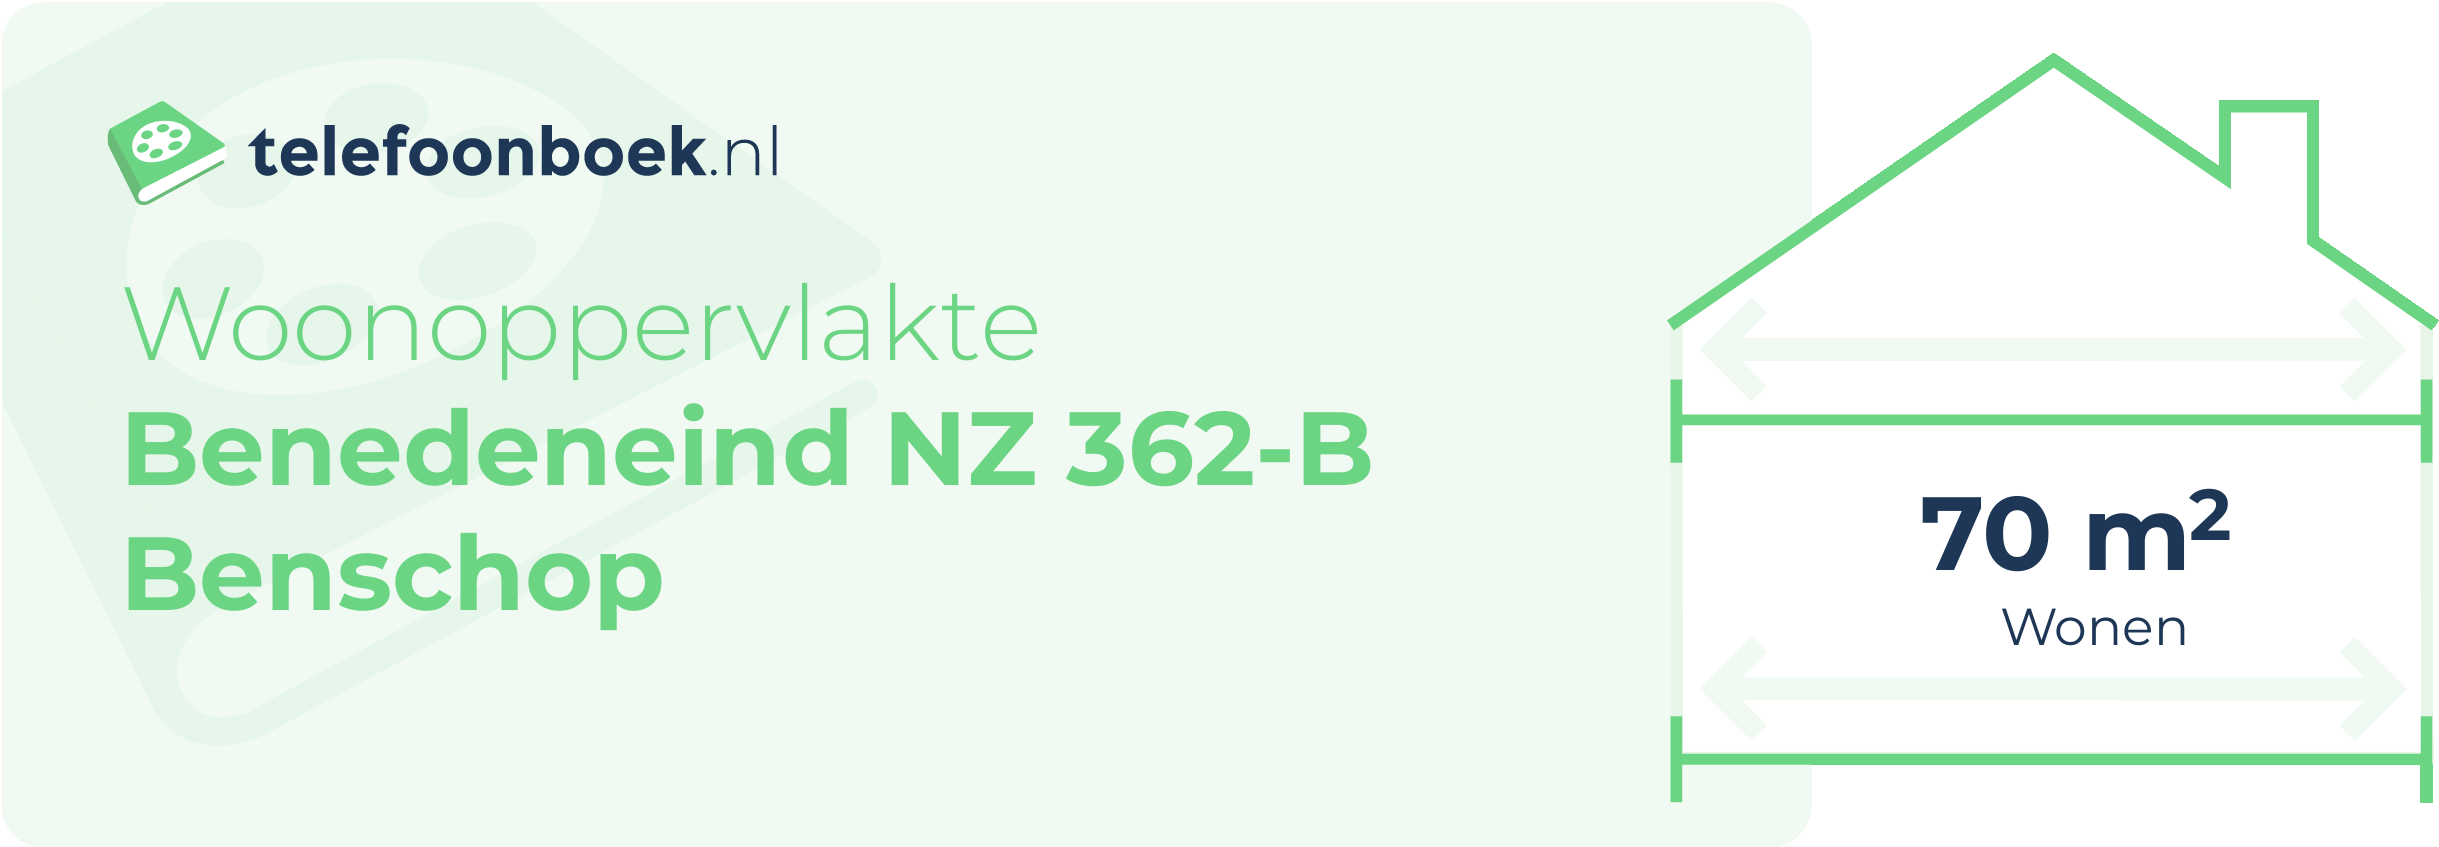 Woonoppervlakte Benedeneind NZ 362-B Benschop